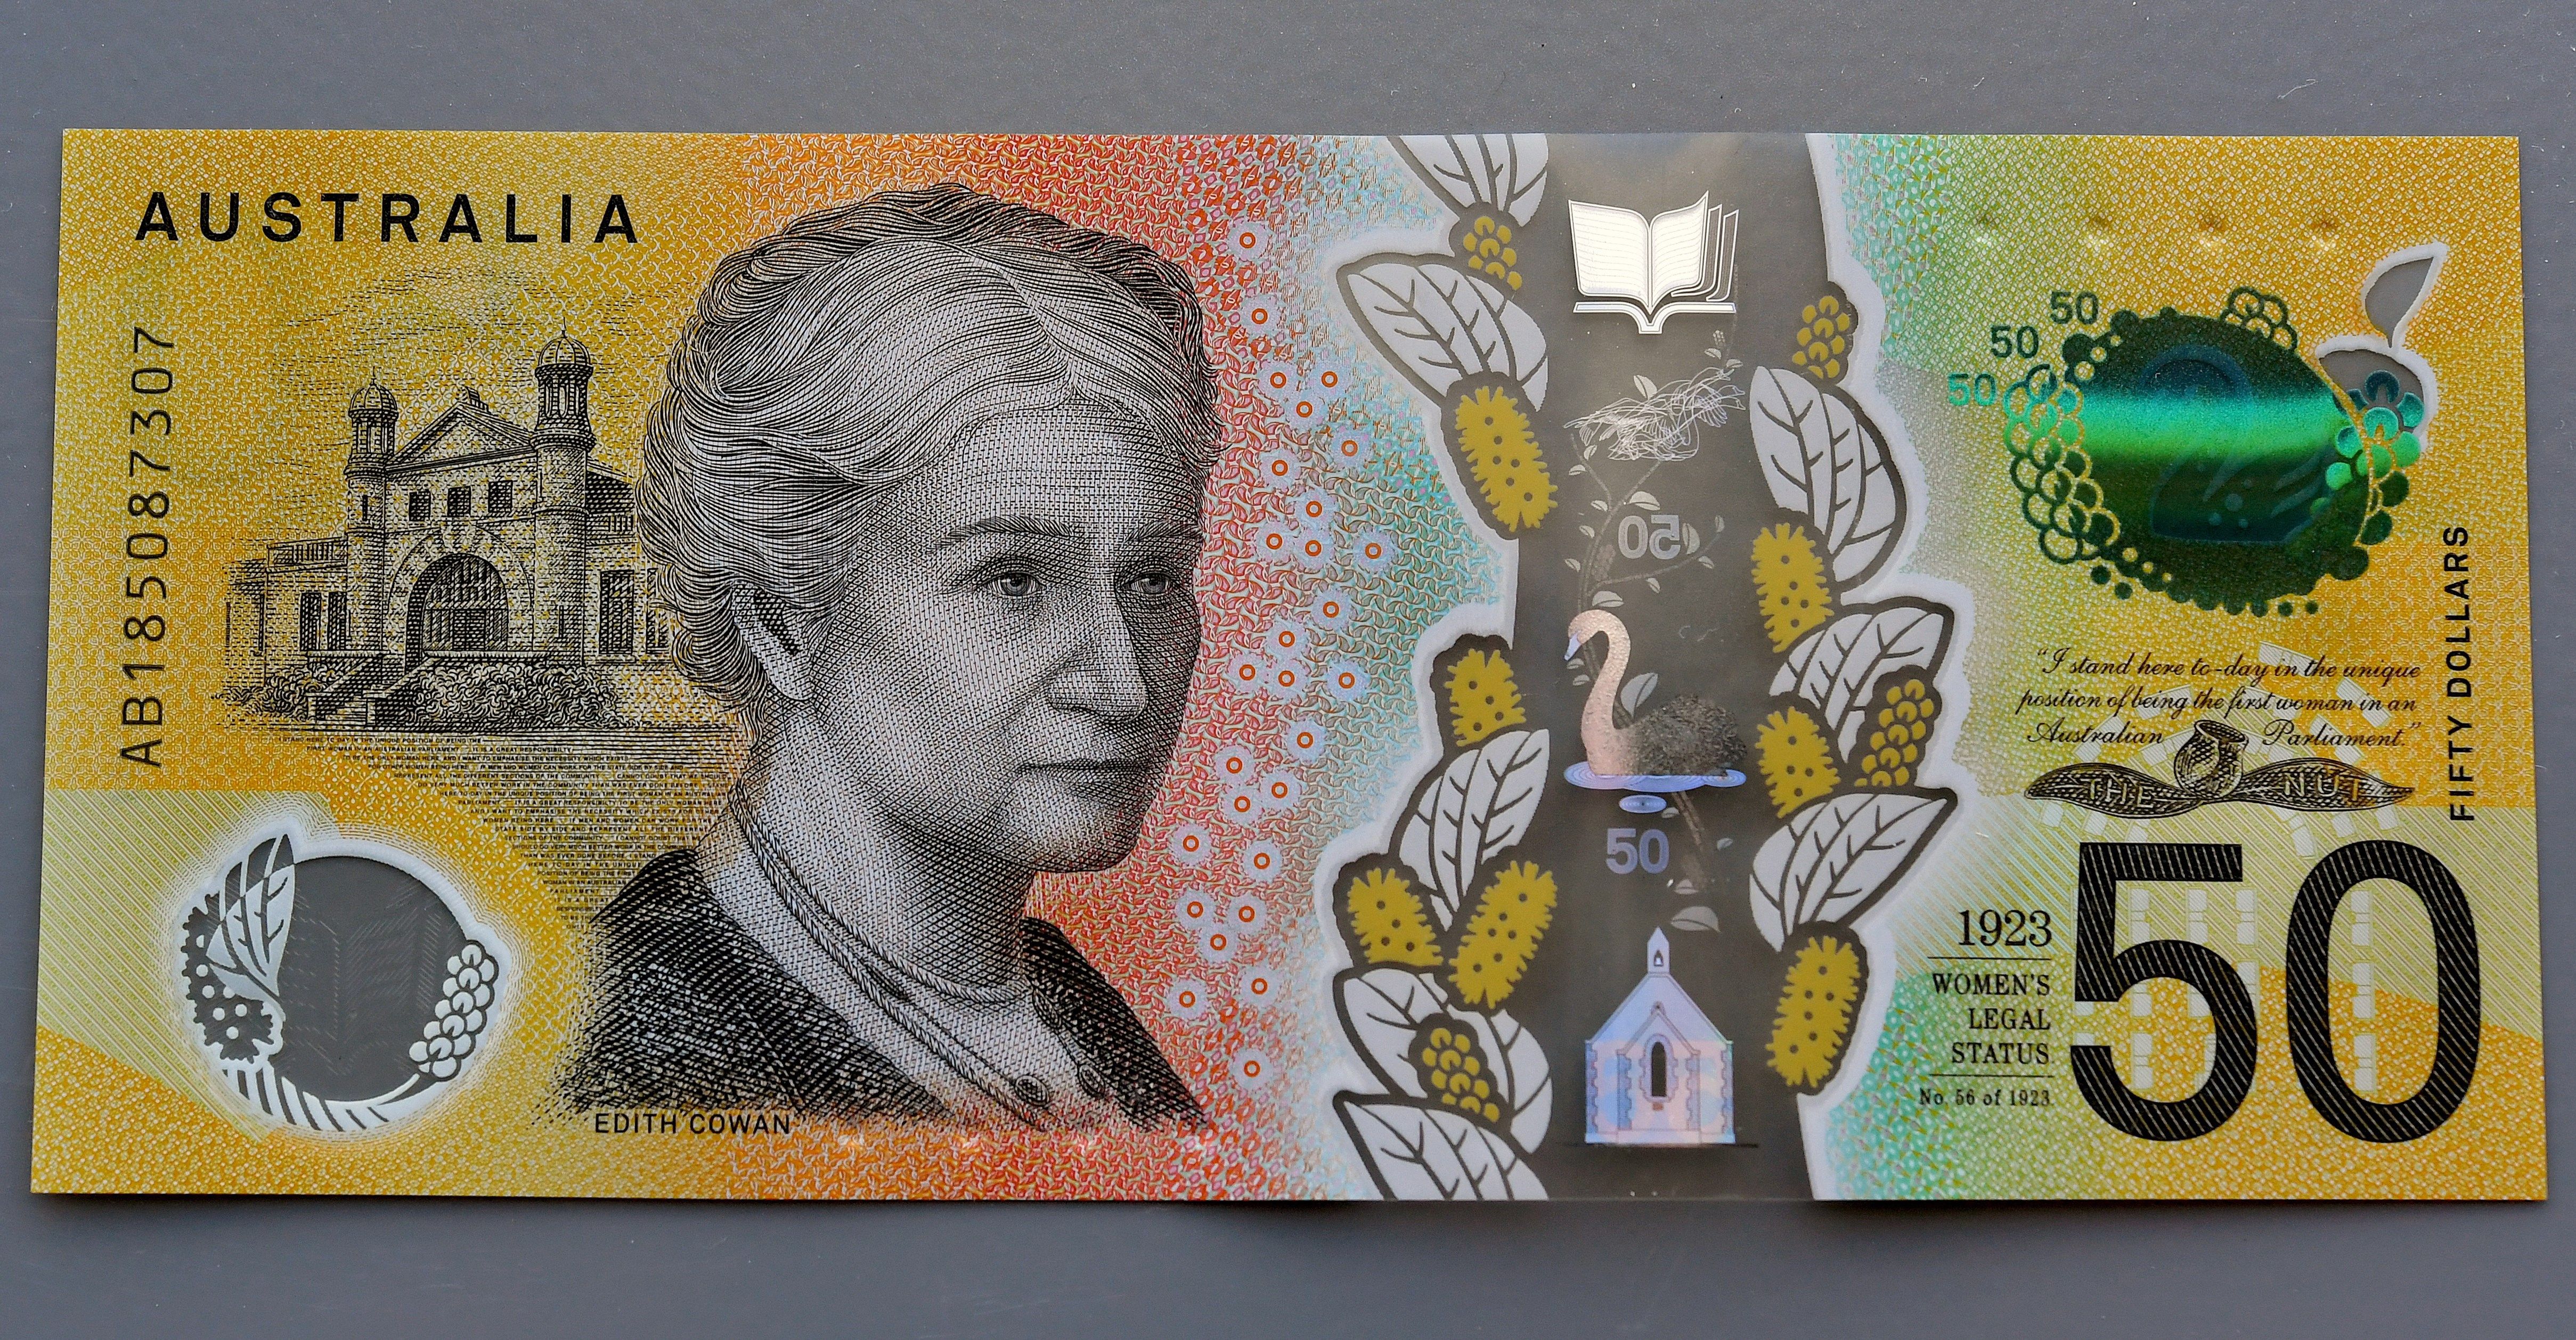 Australia pone en circulación billetes de 50 dólares con faltas de ortografía